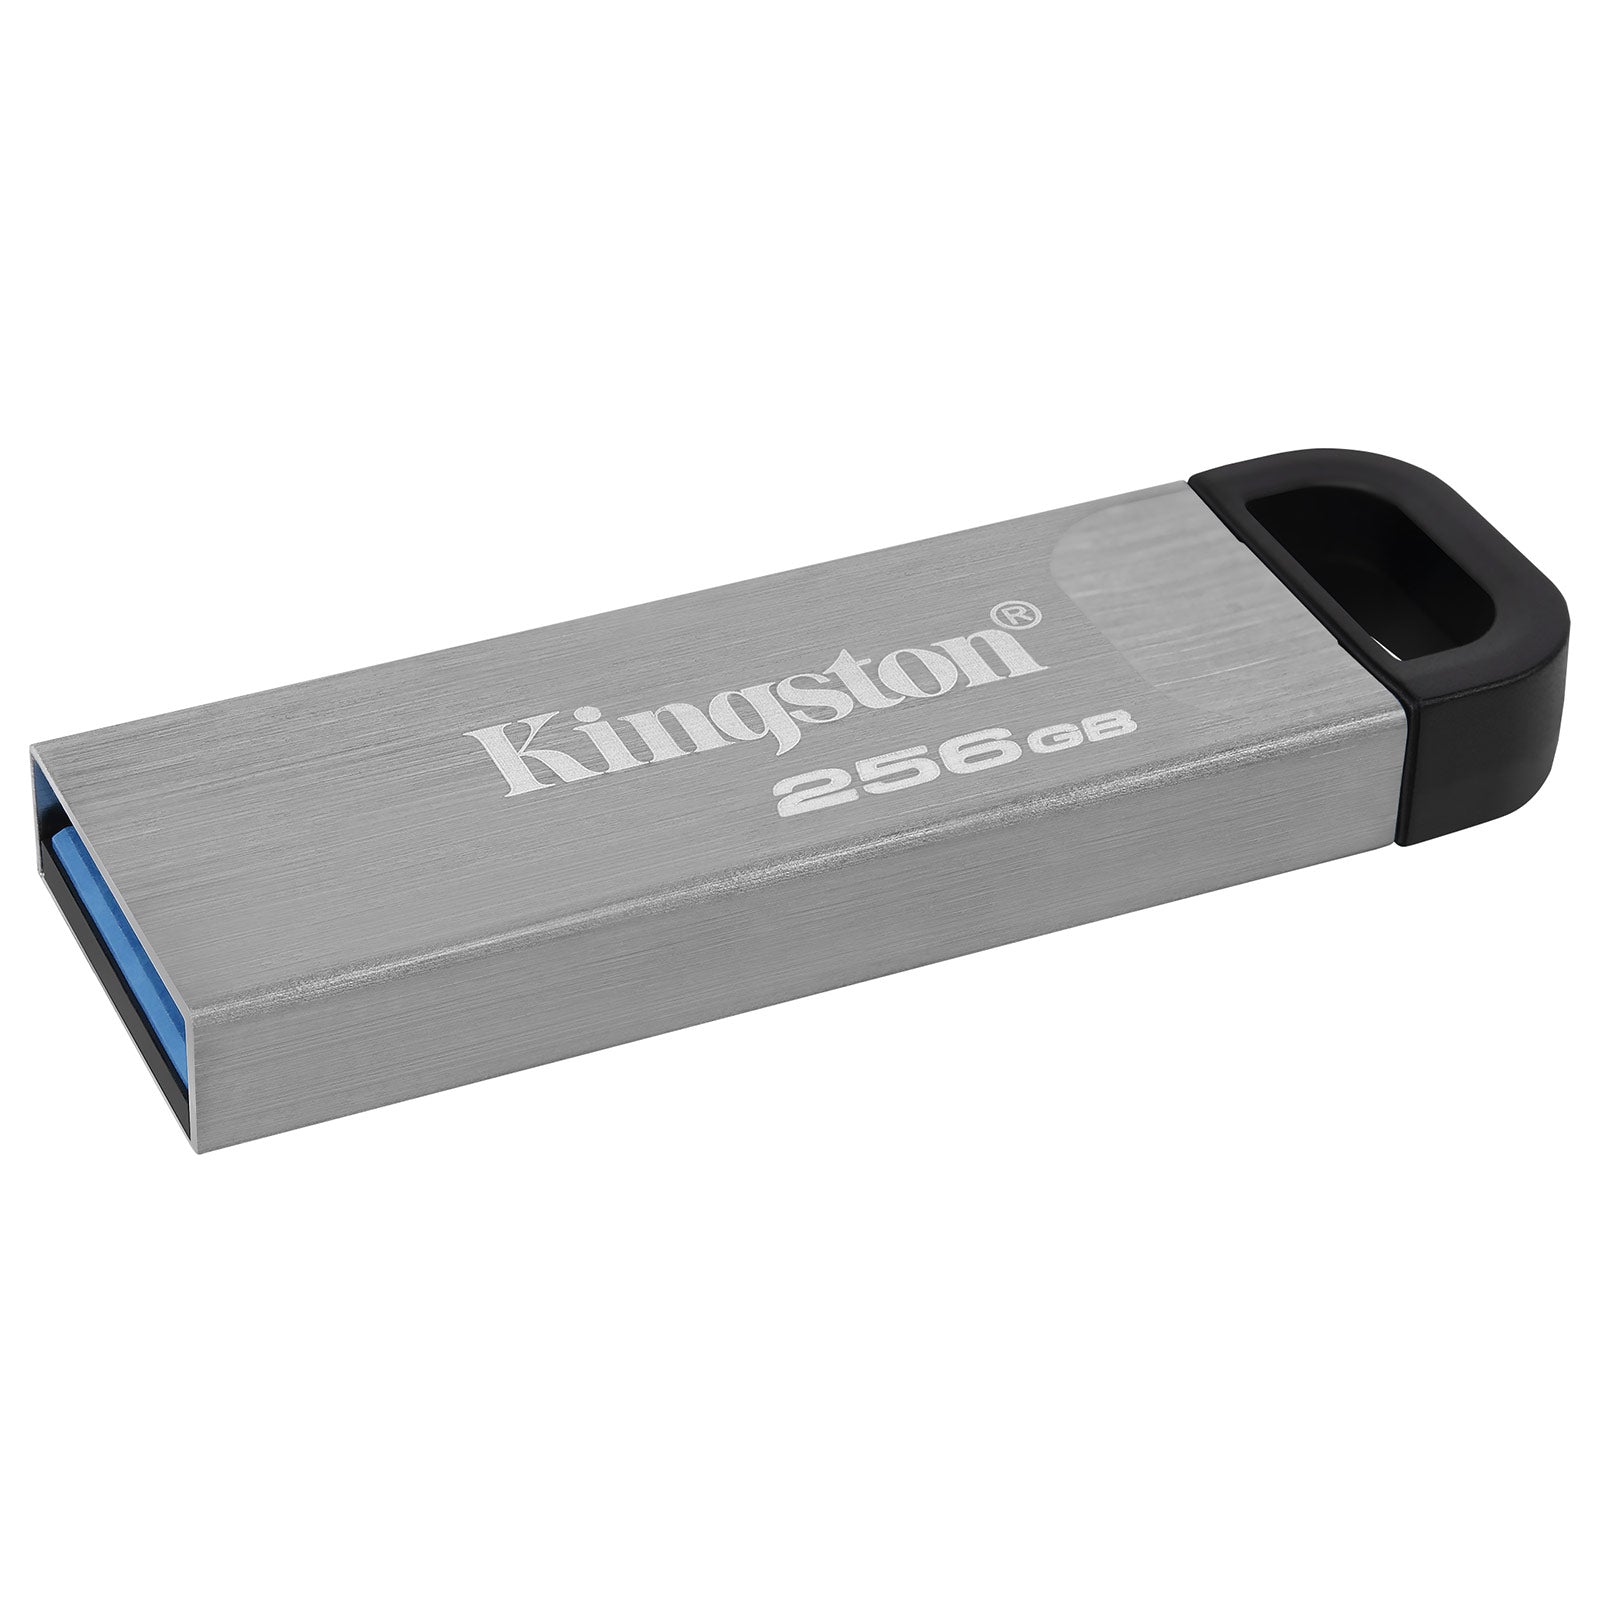 Kingston 256 Go - Clé USB